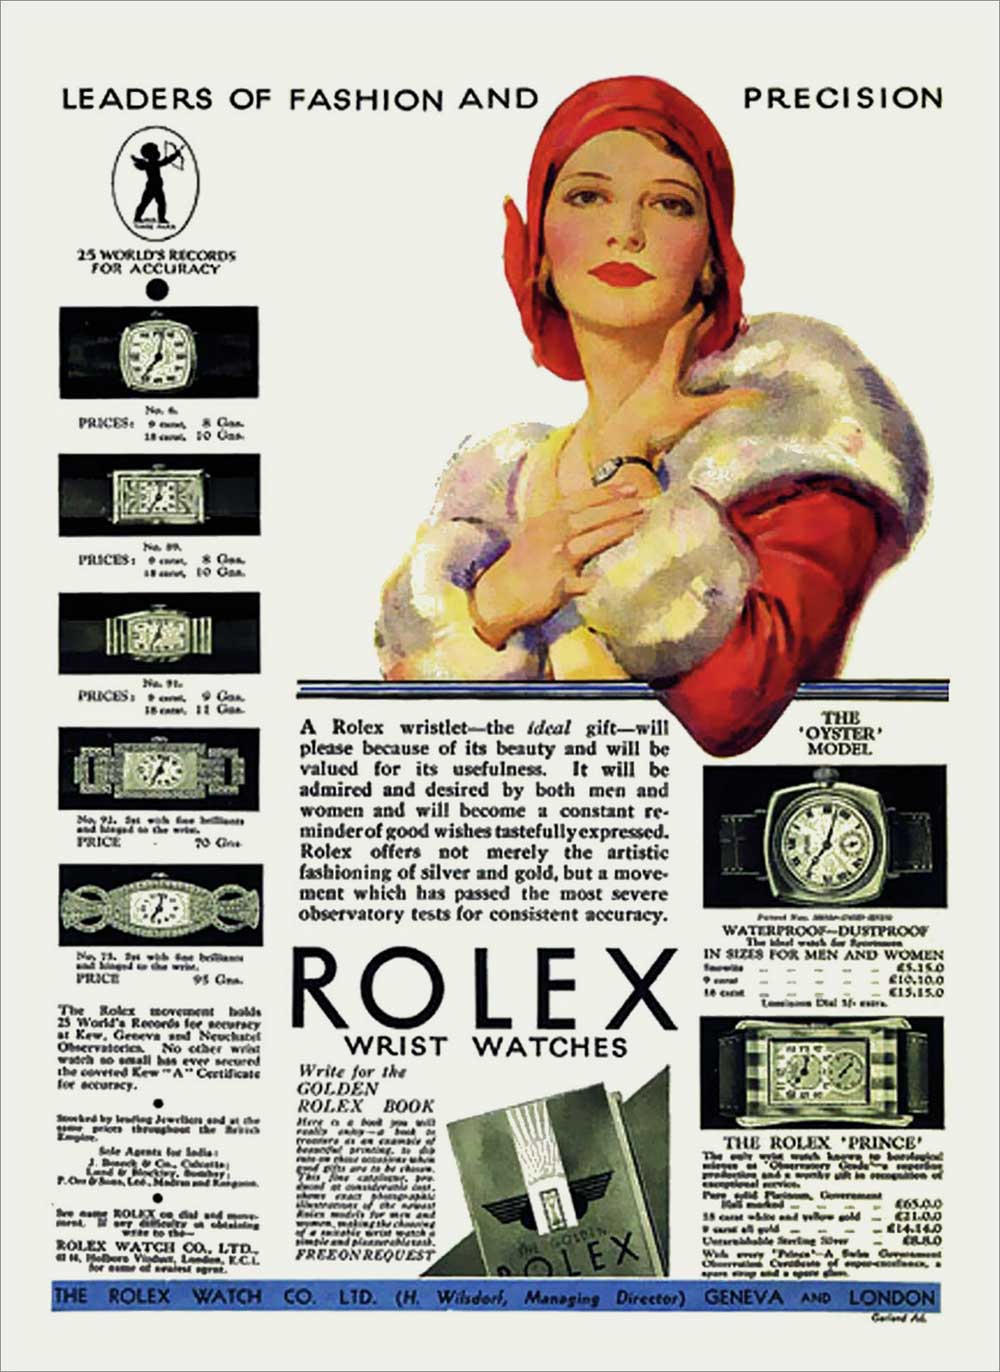 Publicité de Noël de Rolex 1930. Photo Rolexmagazine.com